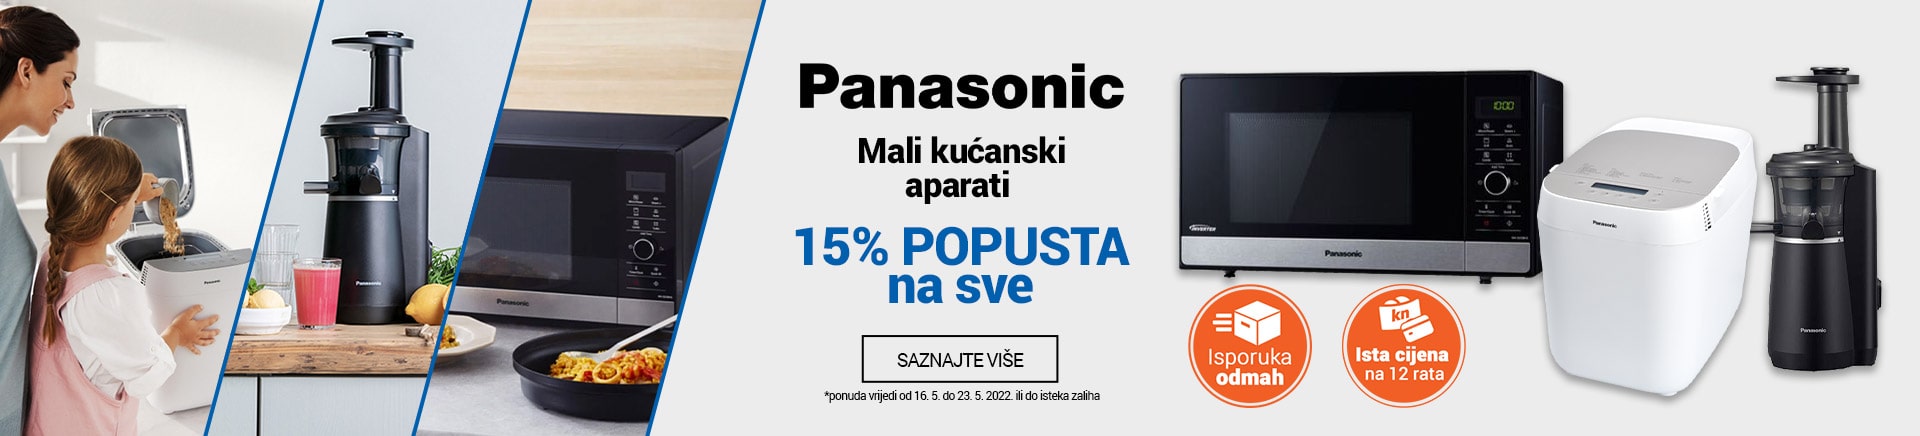 Panasonic Mali kućanski aparati do 15% popusta na sve